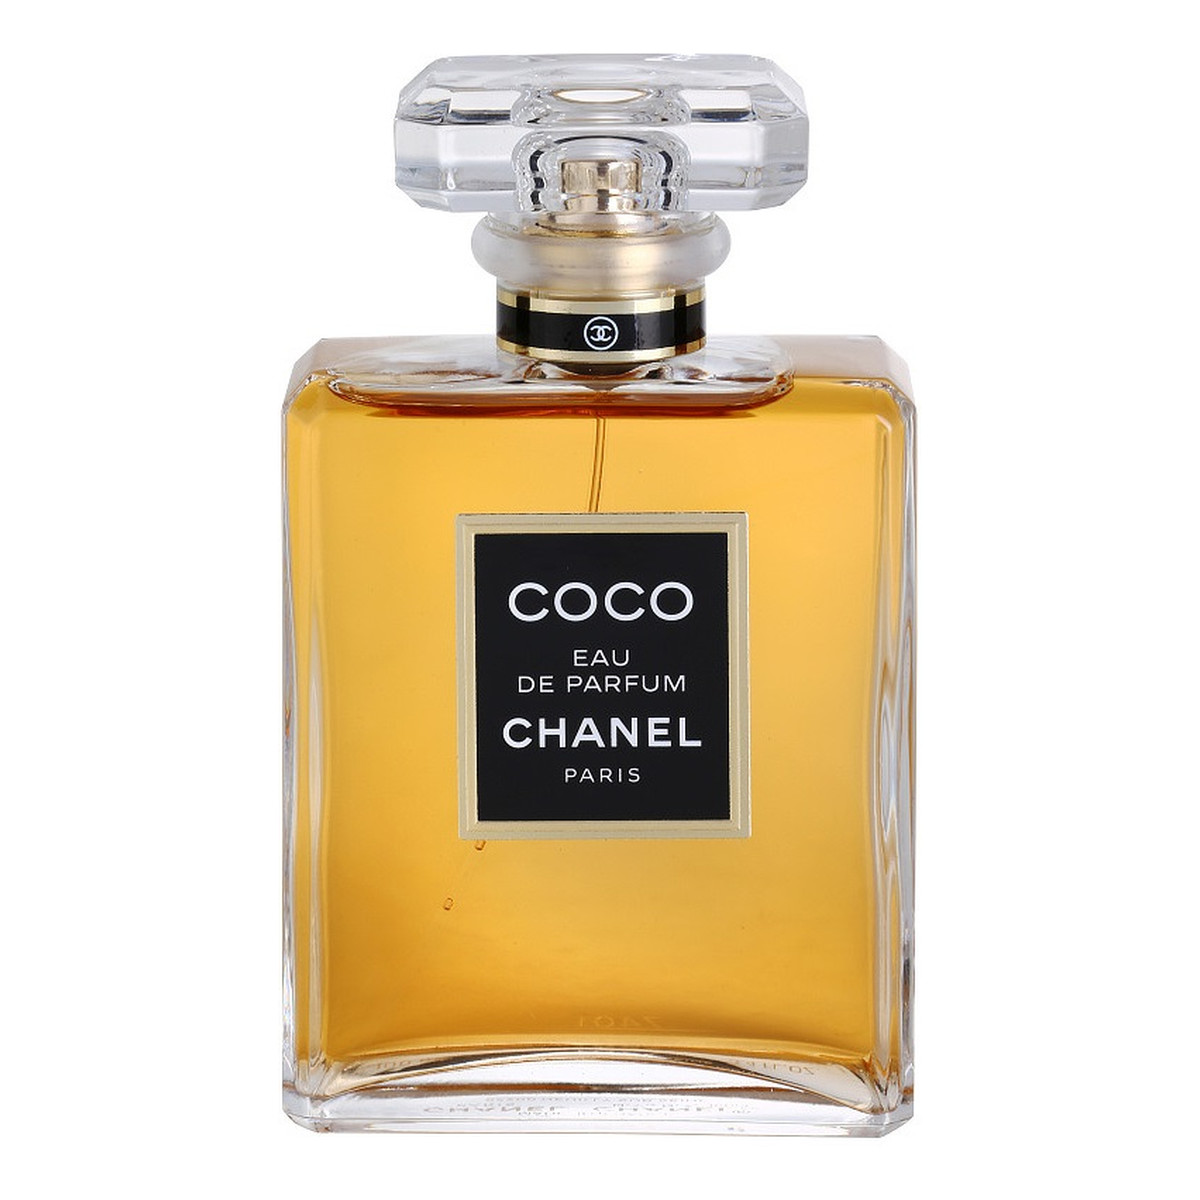 Chanel Coco woda perfumowana dla kobiet 100ml